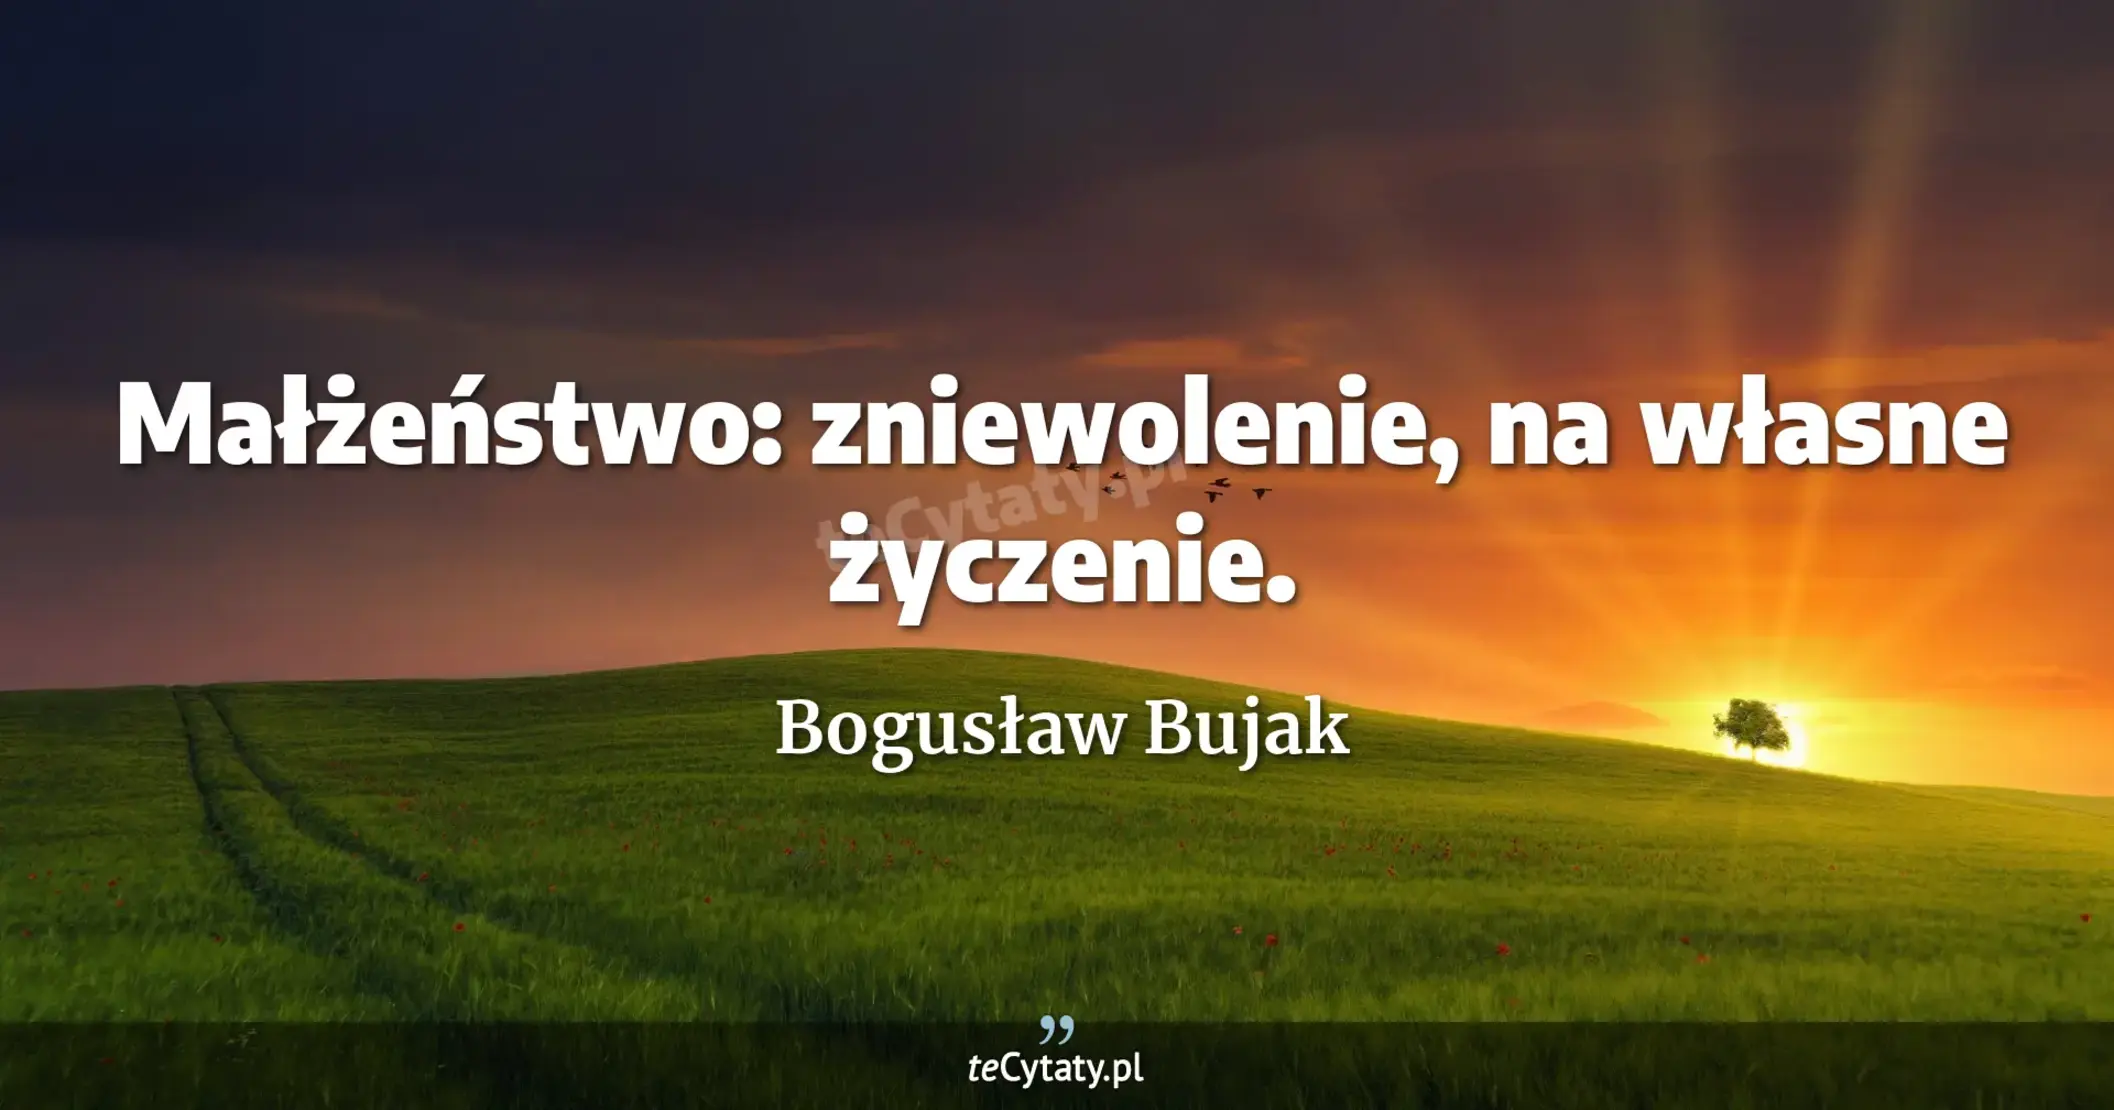 Małżeństwo: zniewolenie, na własne życzenie. - Bogusław Bujak